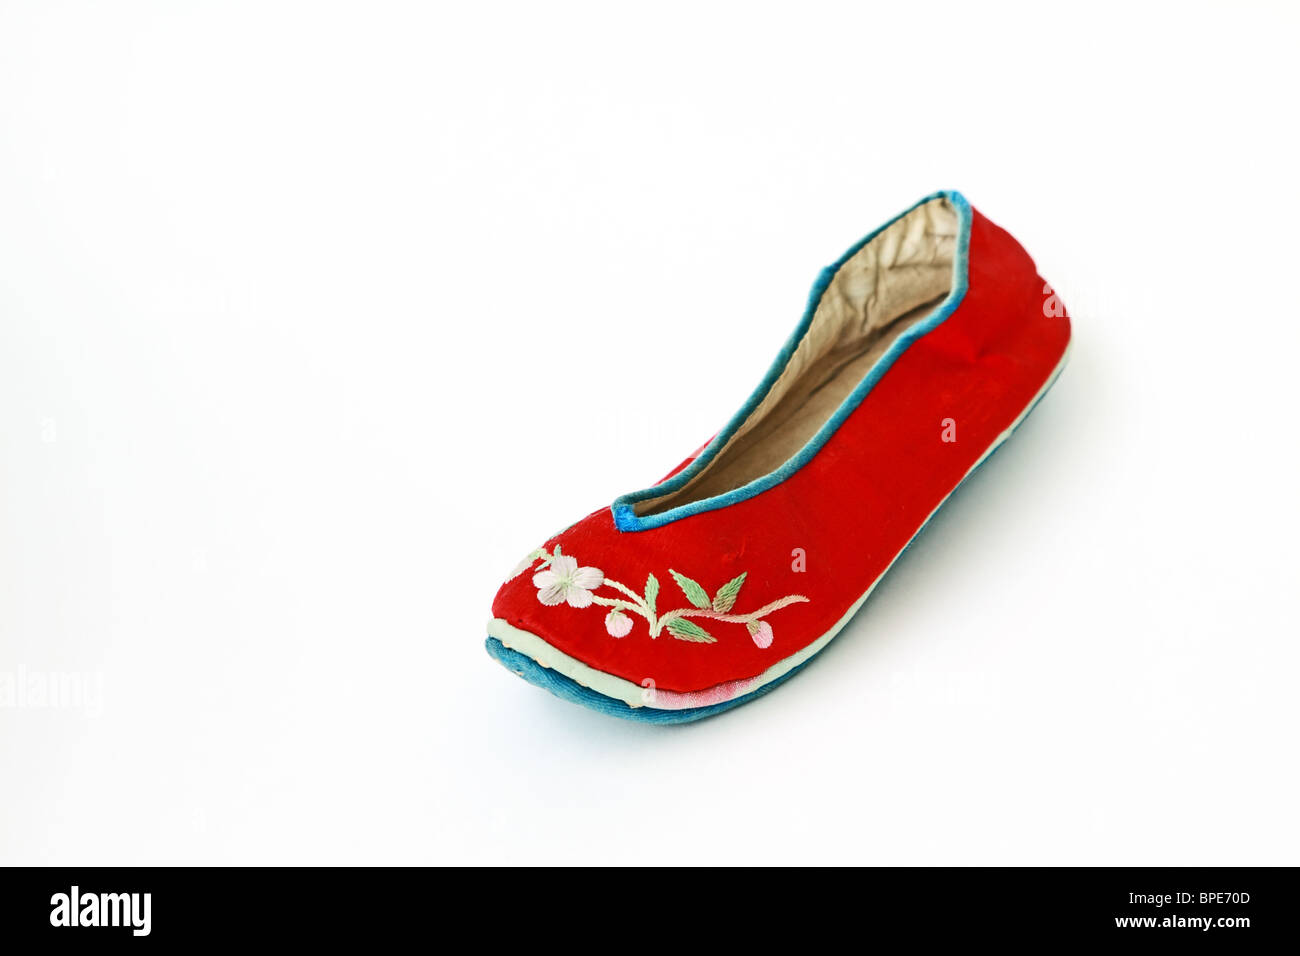 Vintage Chinese handmade chaussure pour petit enfant du début du xxe siècle sur fond blanc Banque D'Images